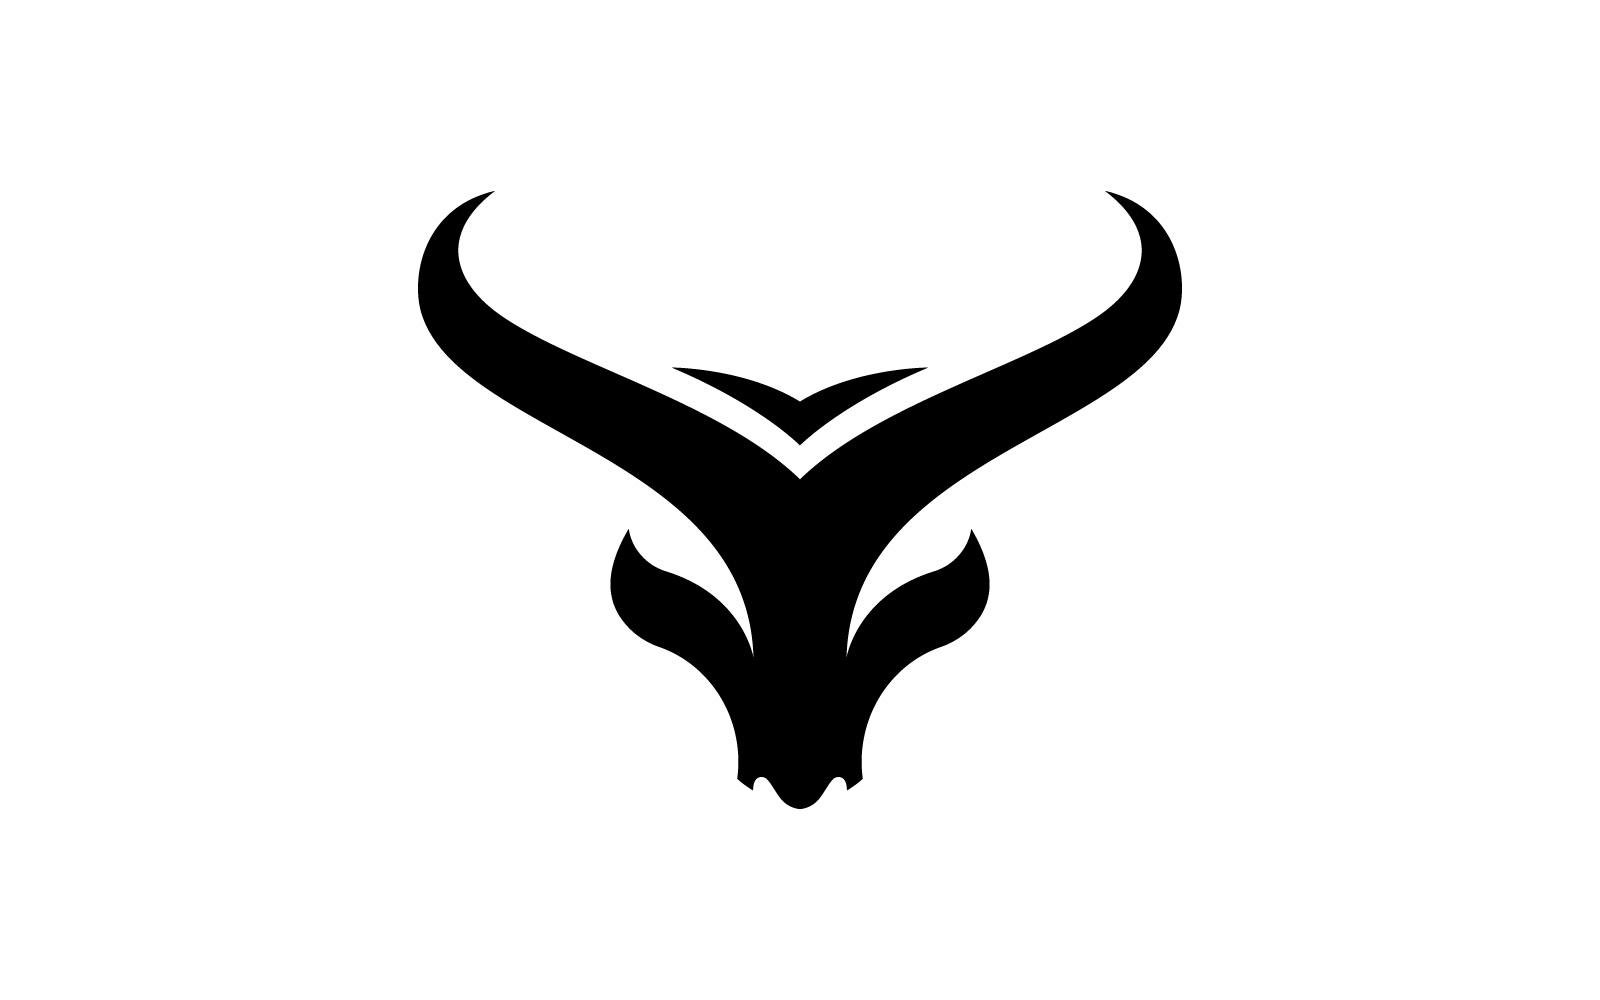 Bull horn logo symbols vector V5